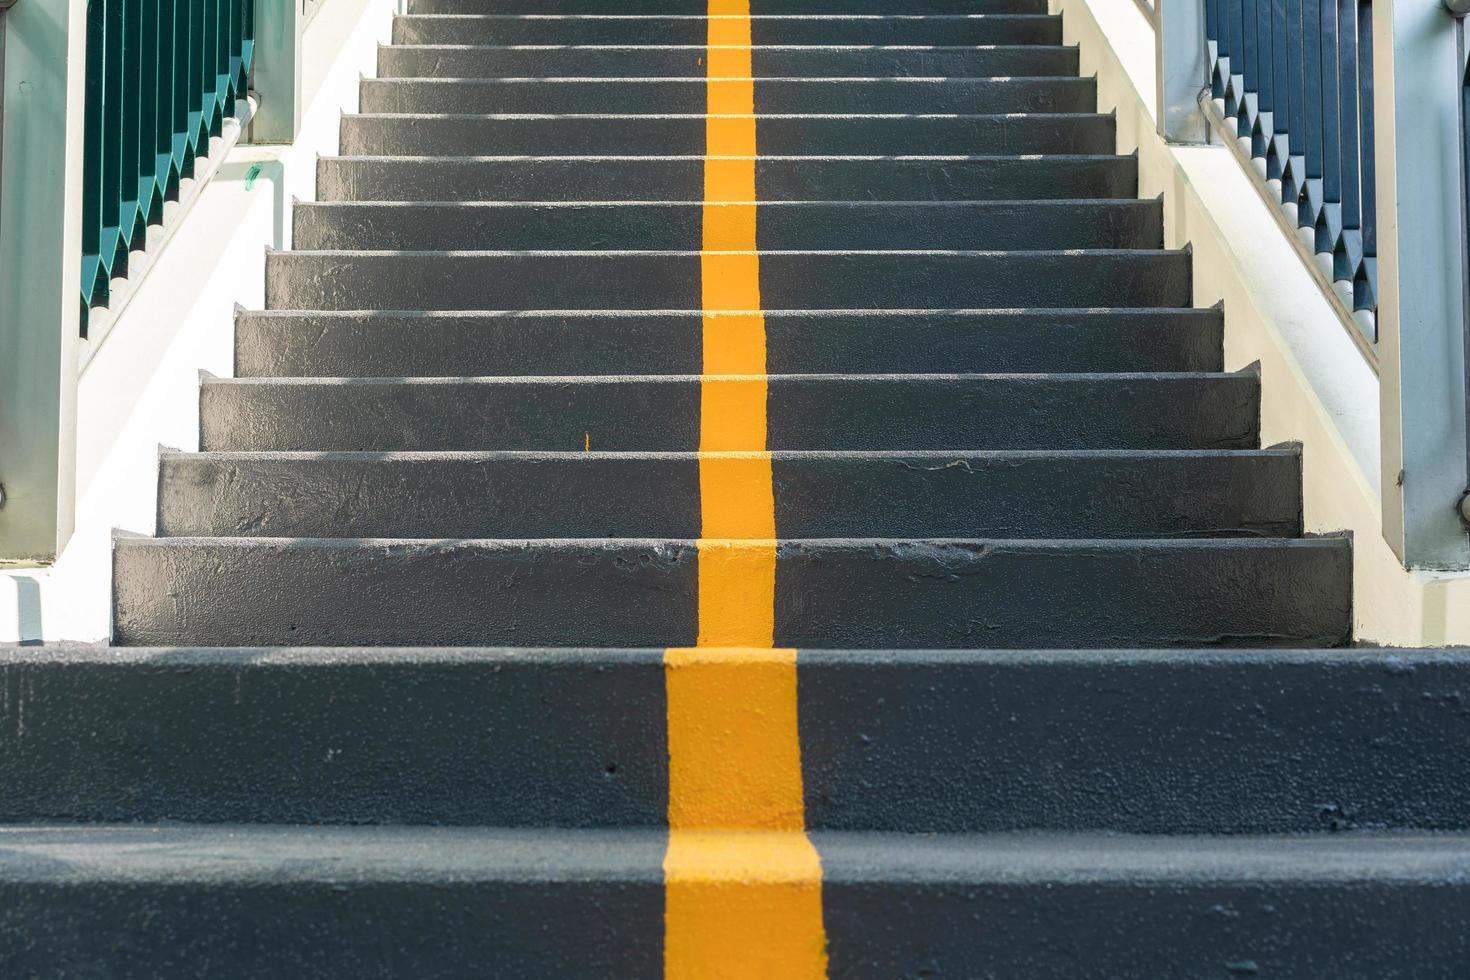 la escalera del paso elevado con línea amarilla de carril y barandilla para seguridad en el cruce de carreteras. señal de caminar en la escalera. cruz amarilla en las escaleras. foto